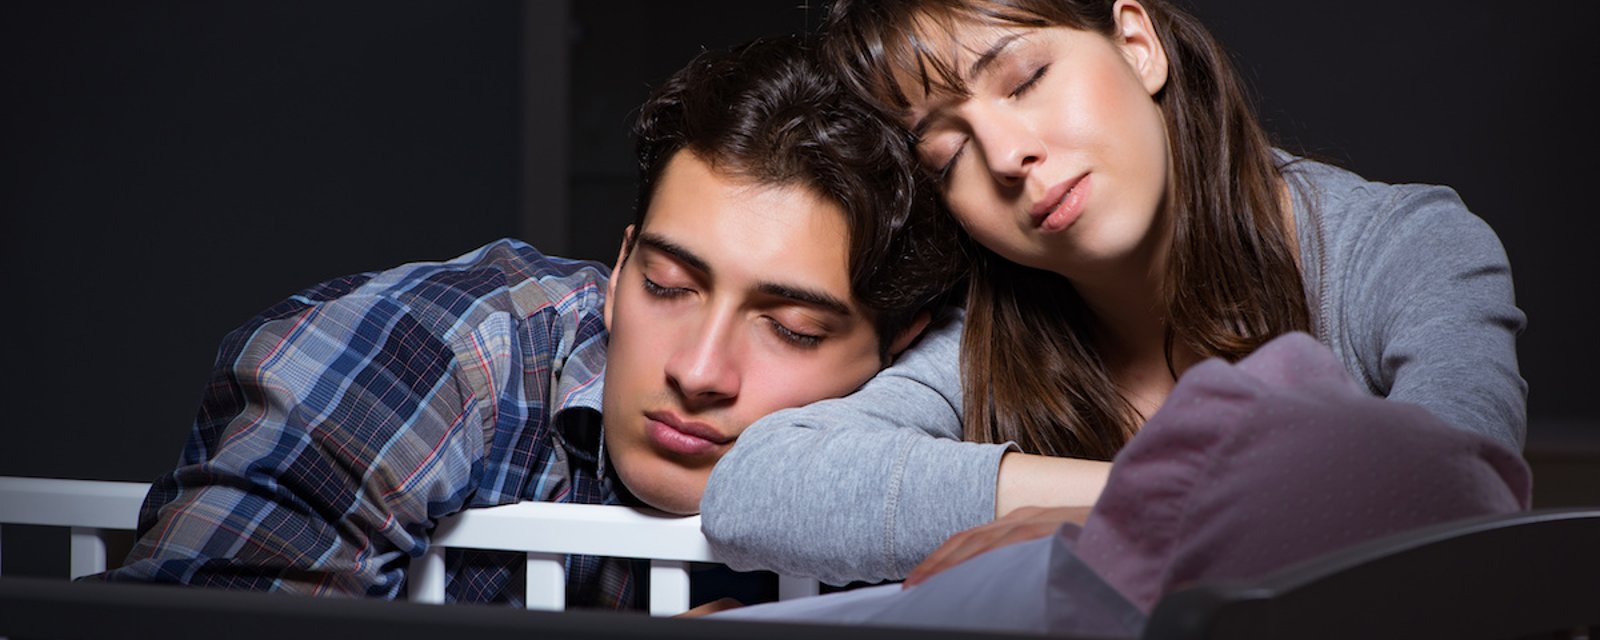 Selon une étude, le fait d’avoir un enfant perturberait le sommeil pendant au moins 6 ans!